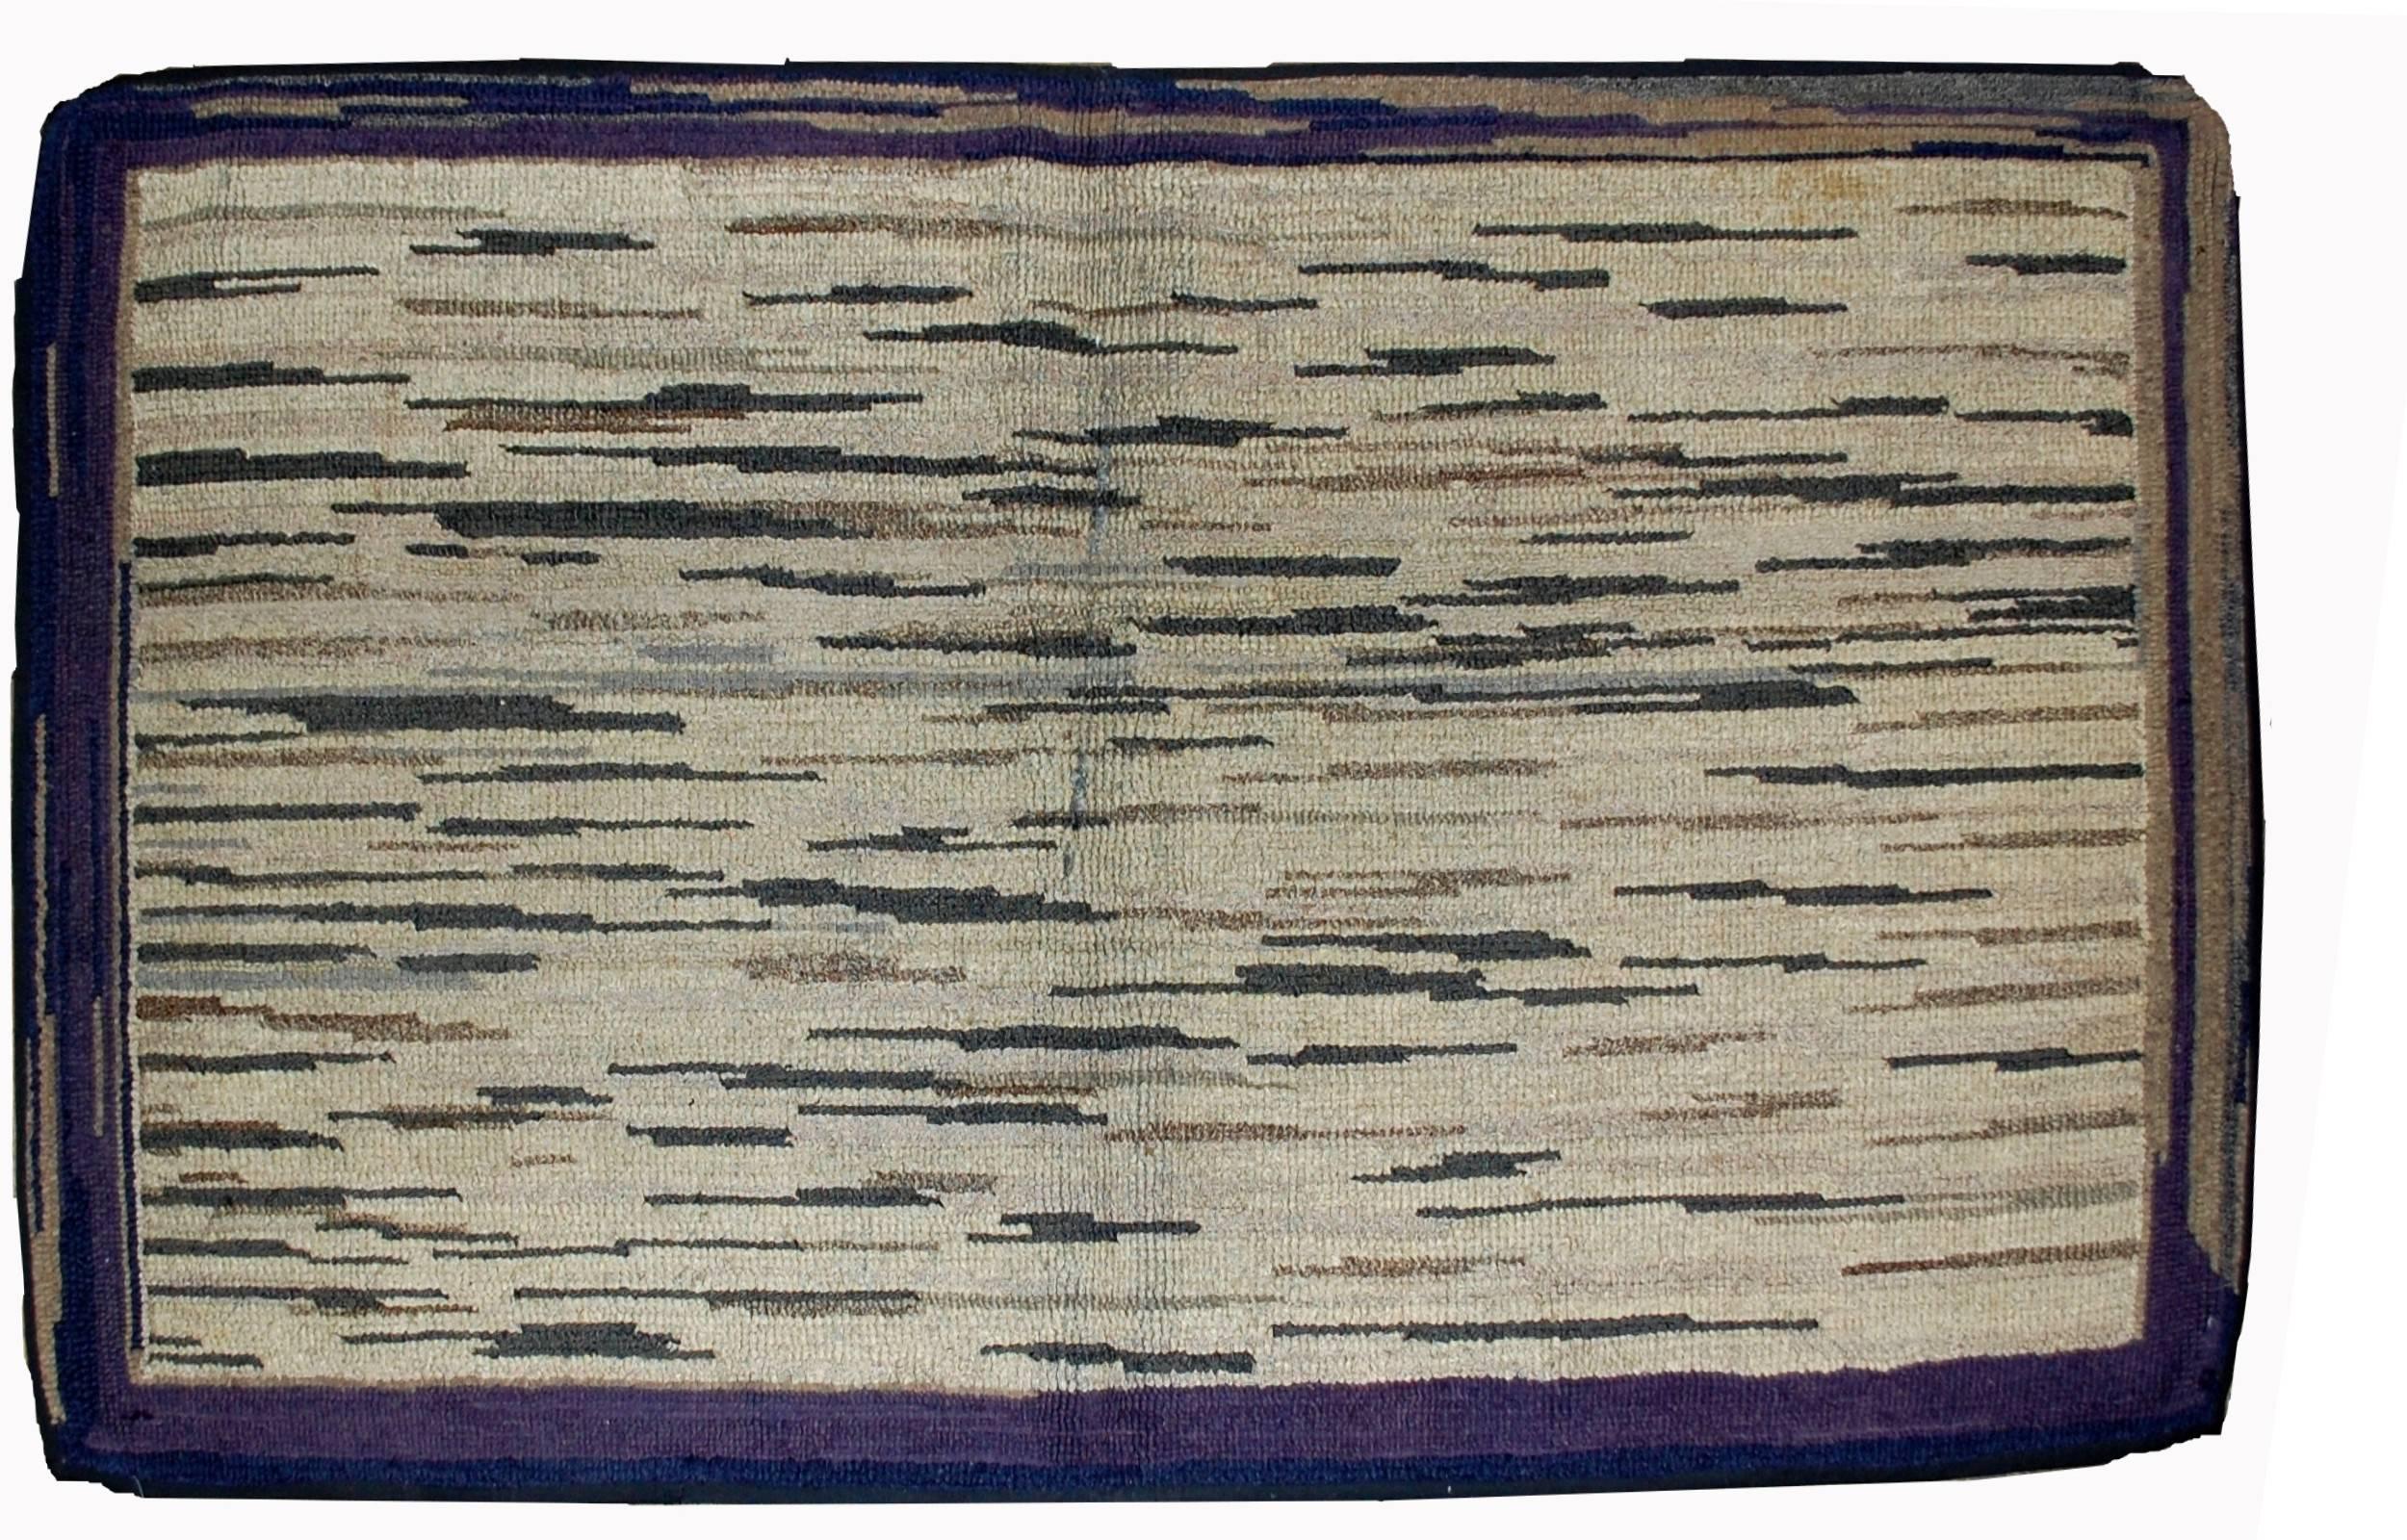 Handgefertigter antiker amerikanischer Hakenteppich in gutem Zustand. Der Teppich hat ein für die damalige Zeit modernes Design. Bunte Streifen auf dem beigen Schirm, umgeben von einem lila Rand. Der Teppich ist in einem guten Originalzustand.
   